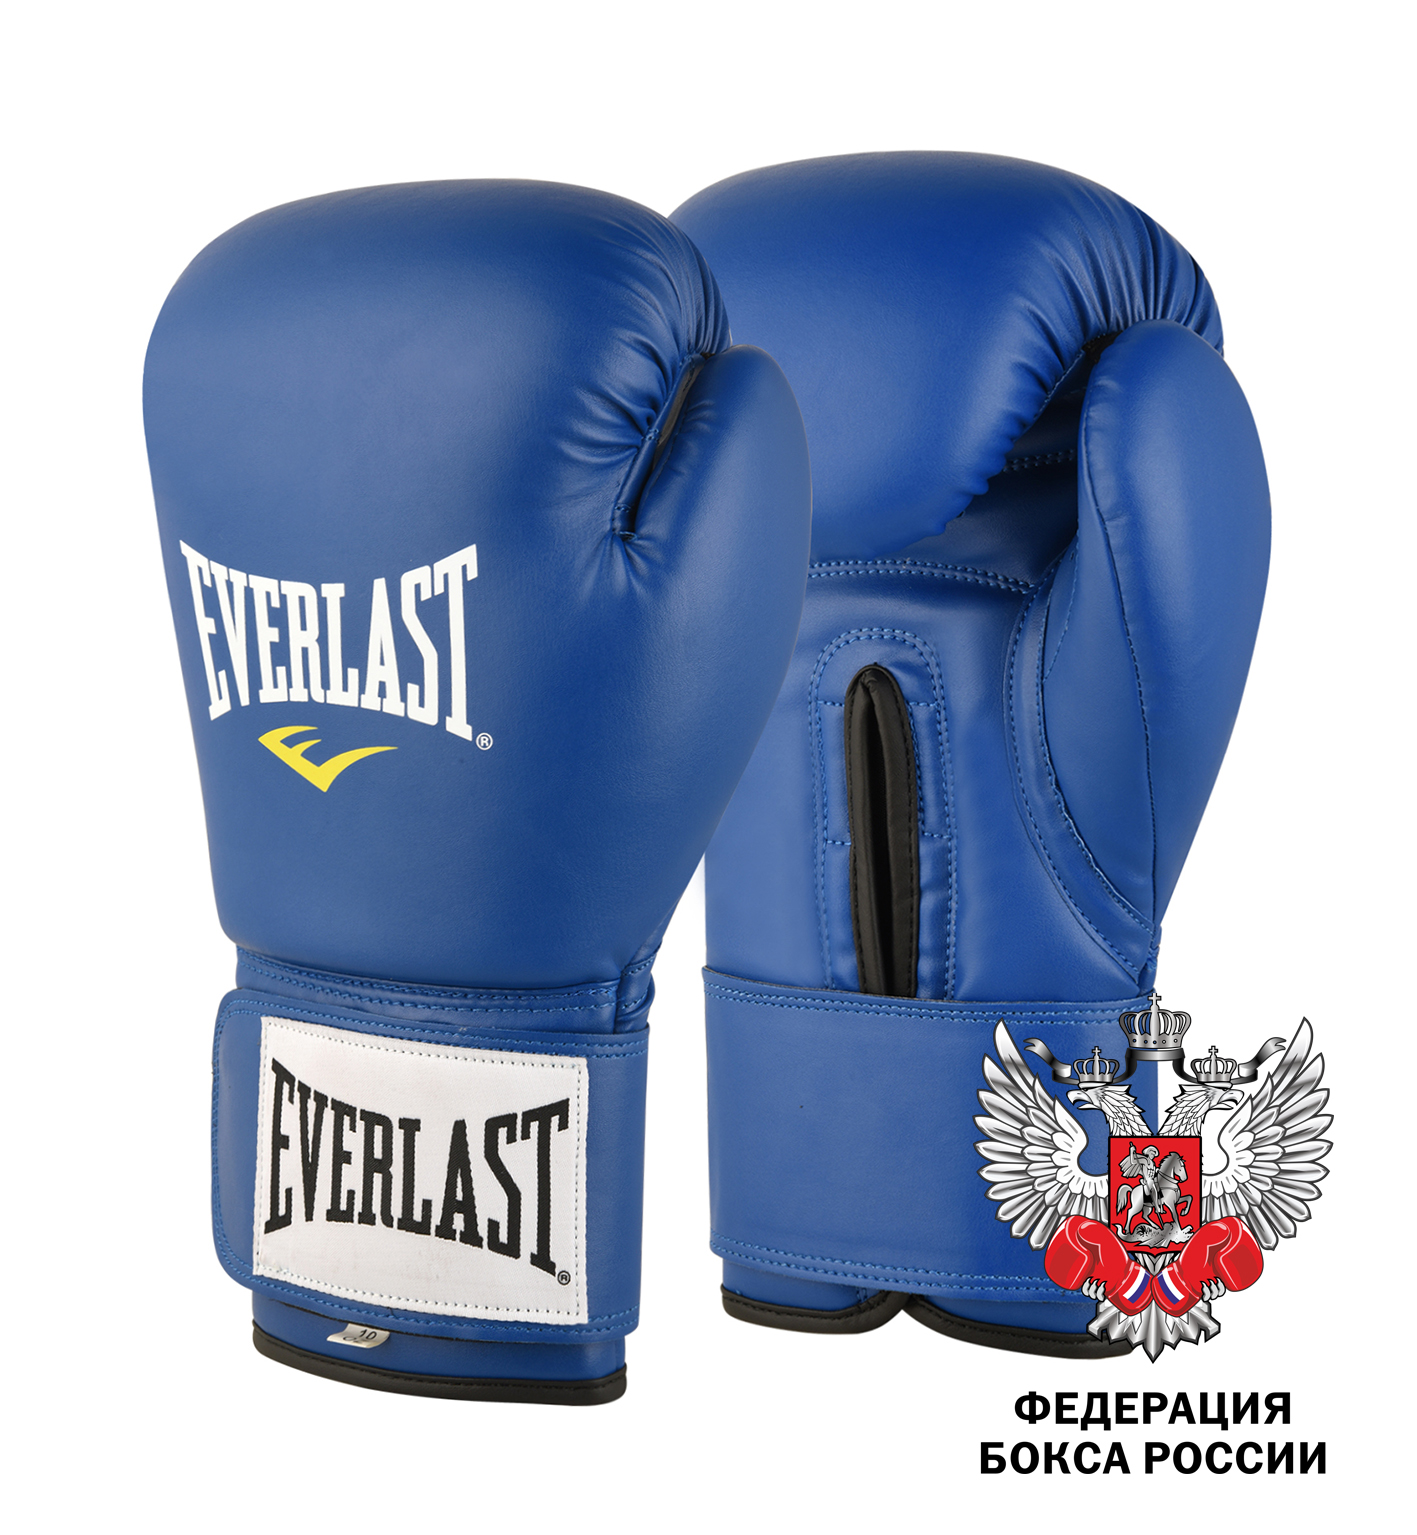  Боксерские перчатки Everlast Amateur Cometition PU синие 